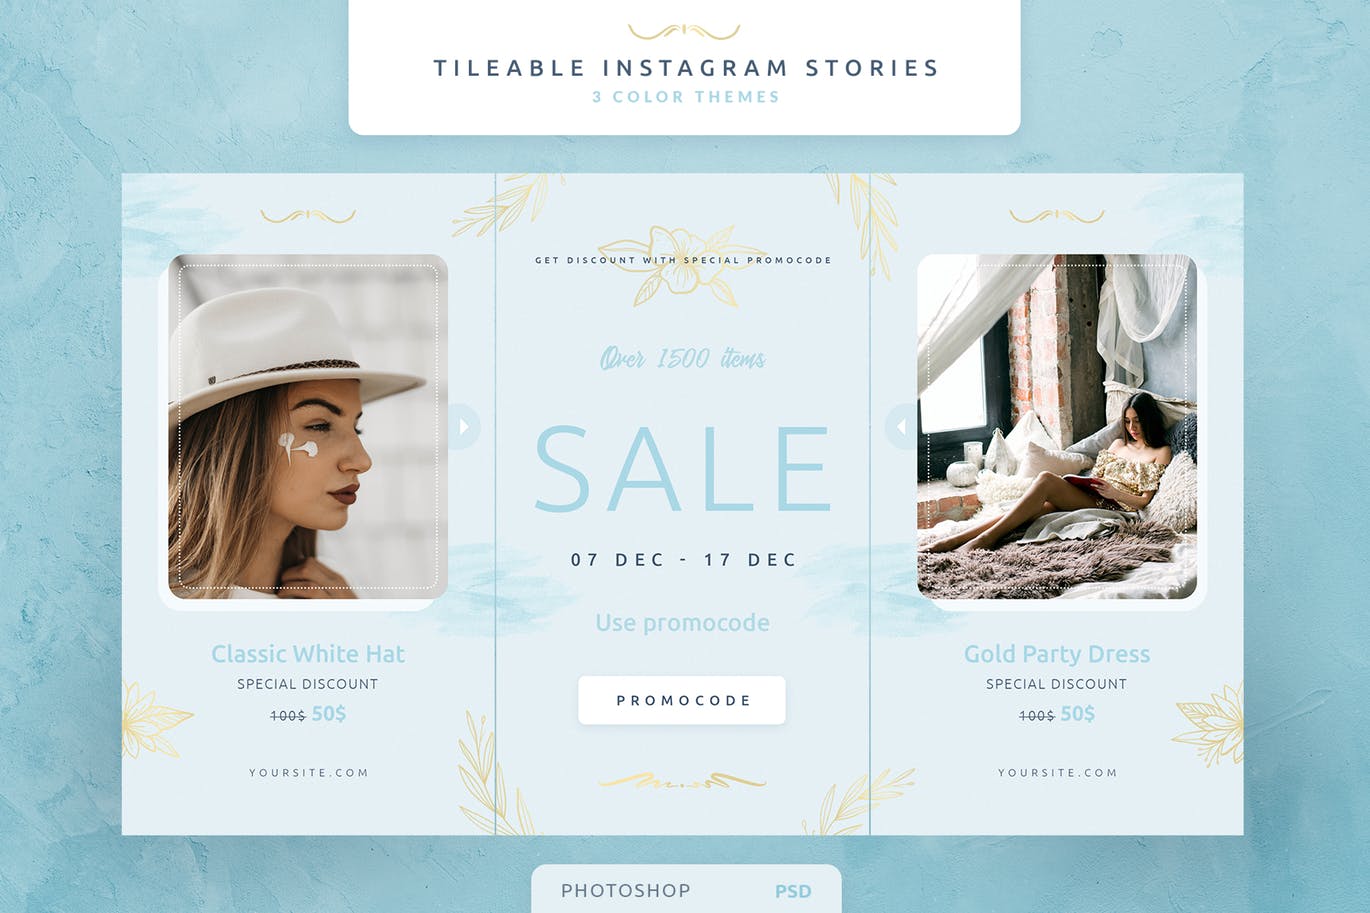 创意三列式Instagram社交品牌故事设计模板素材库精选 Tileable Instagram Stories插图(1)